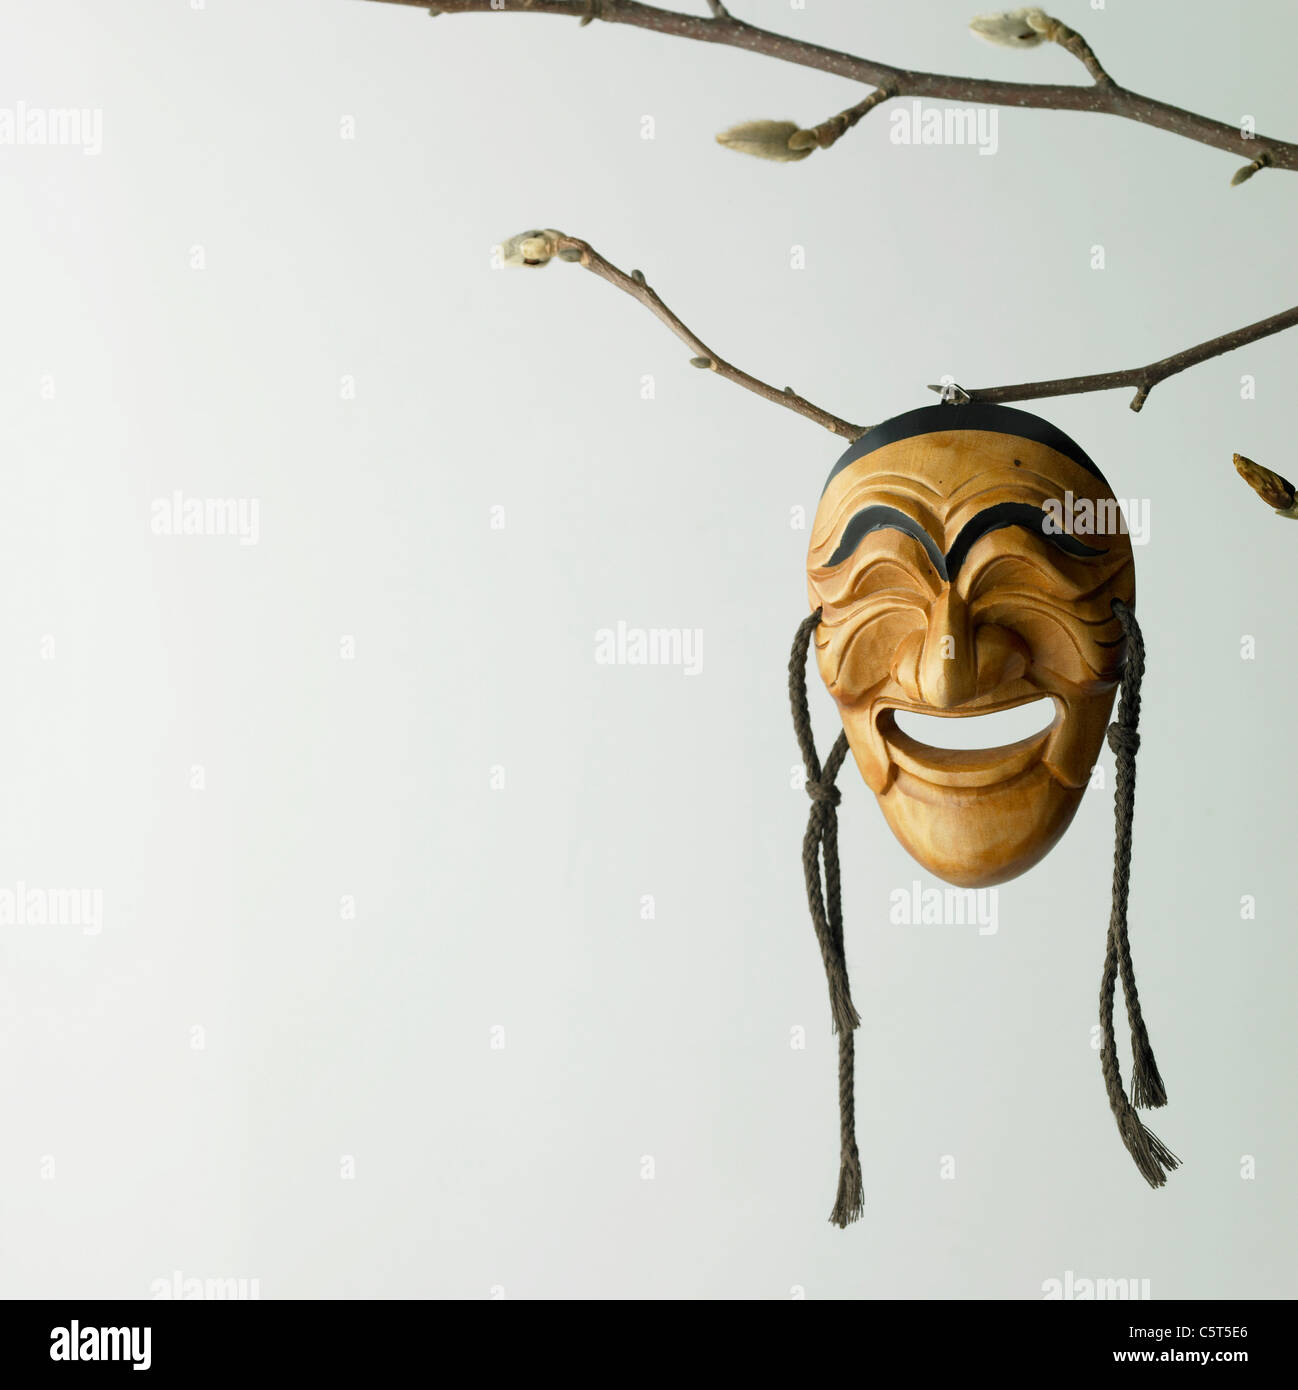 Koreanische traditionelle Maske an einem Ast hängen Stockfoto